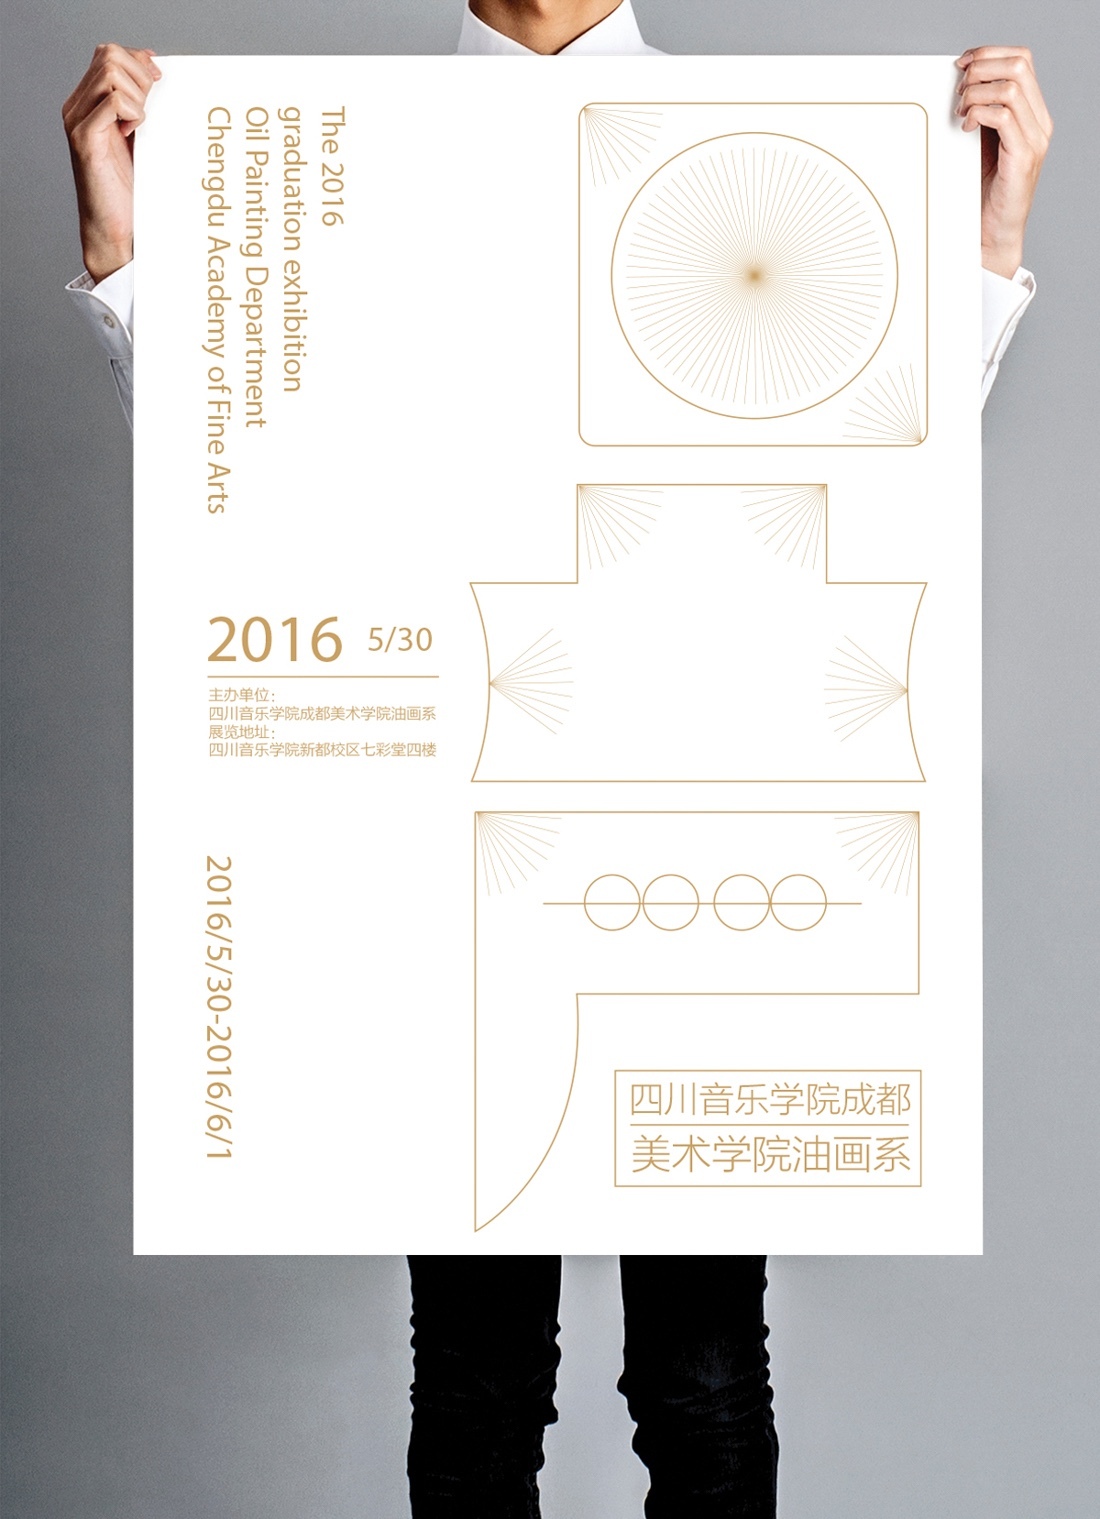 四川美术学院海报、导示系统设计图5